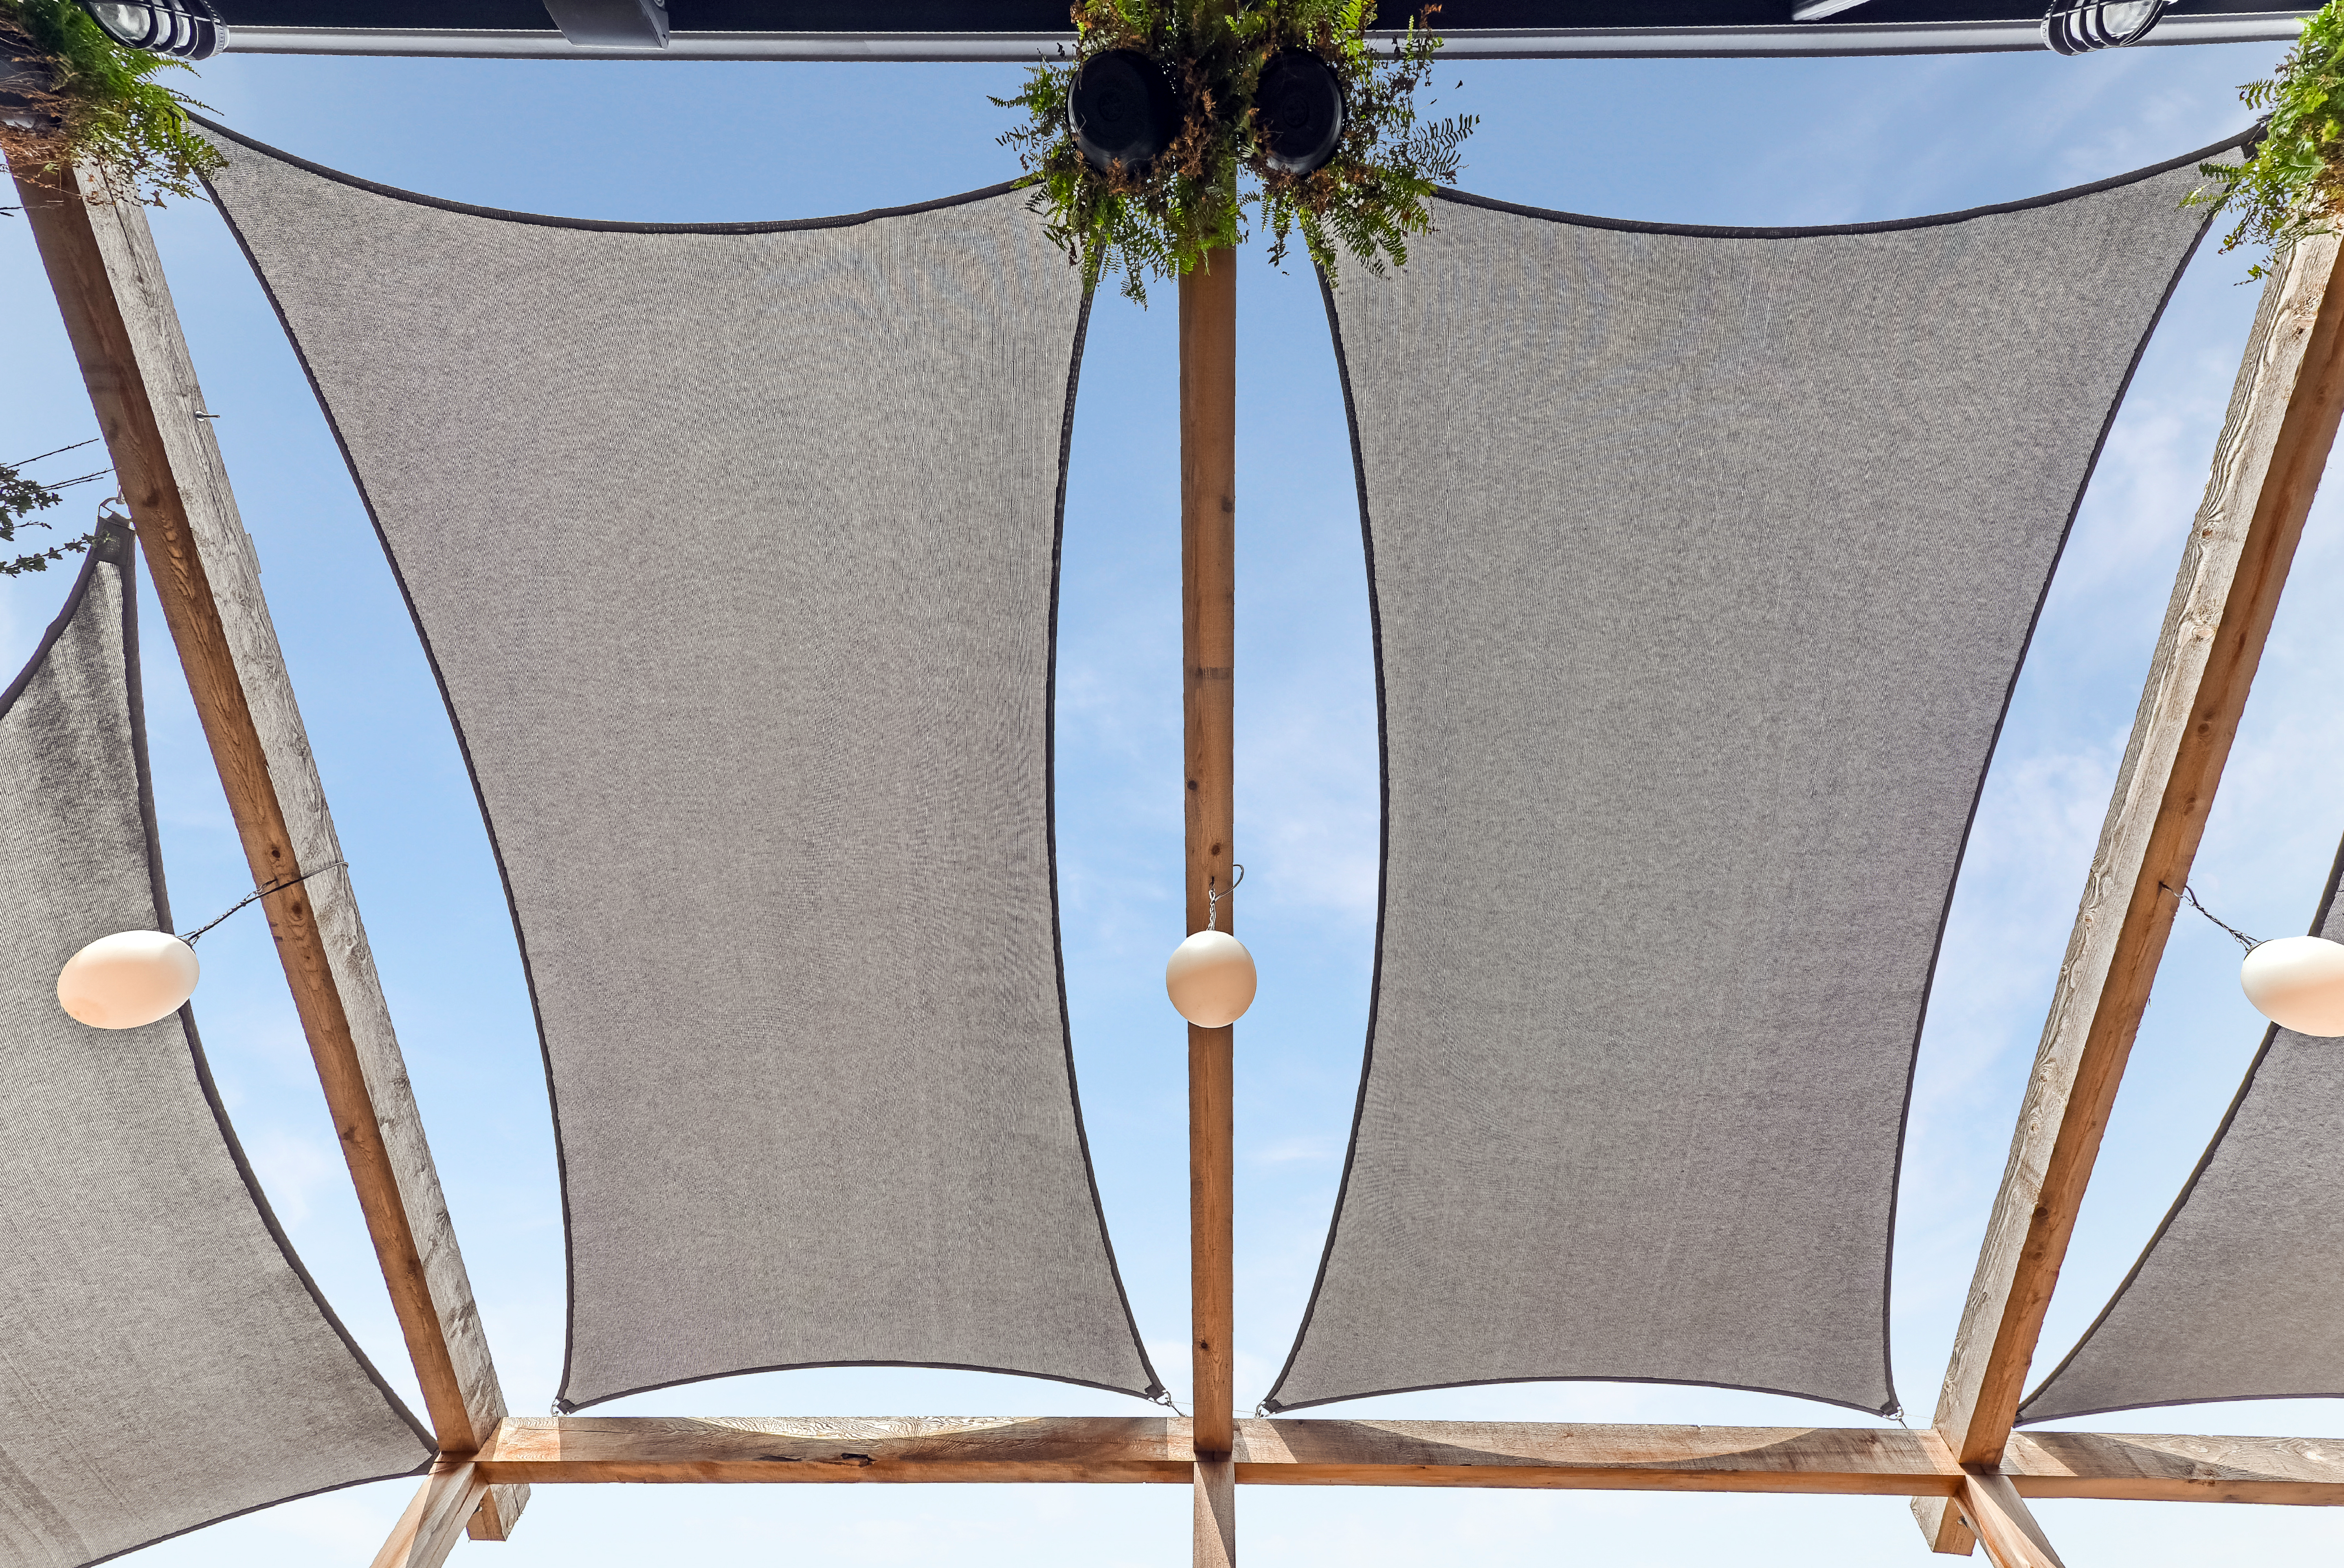 Sunbrella fabric architecture Shade view